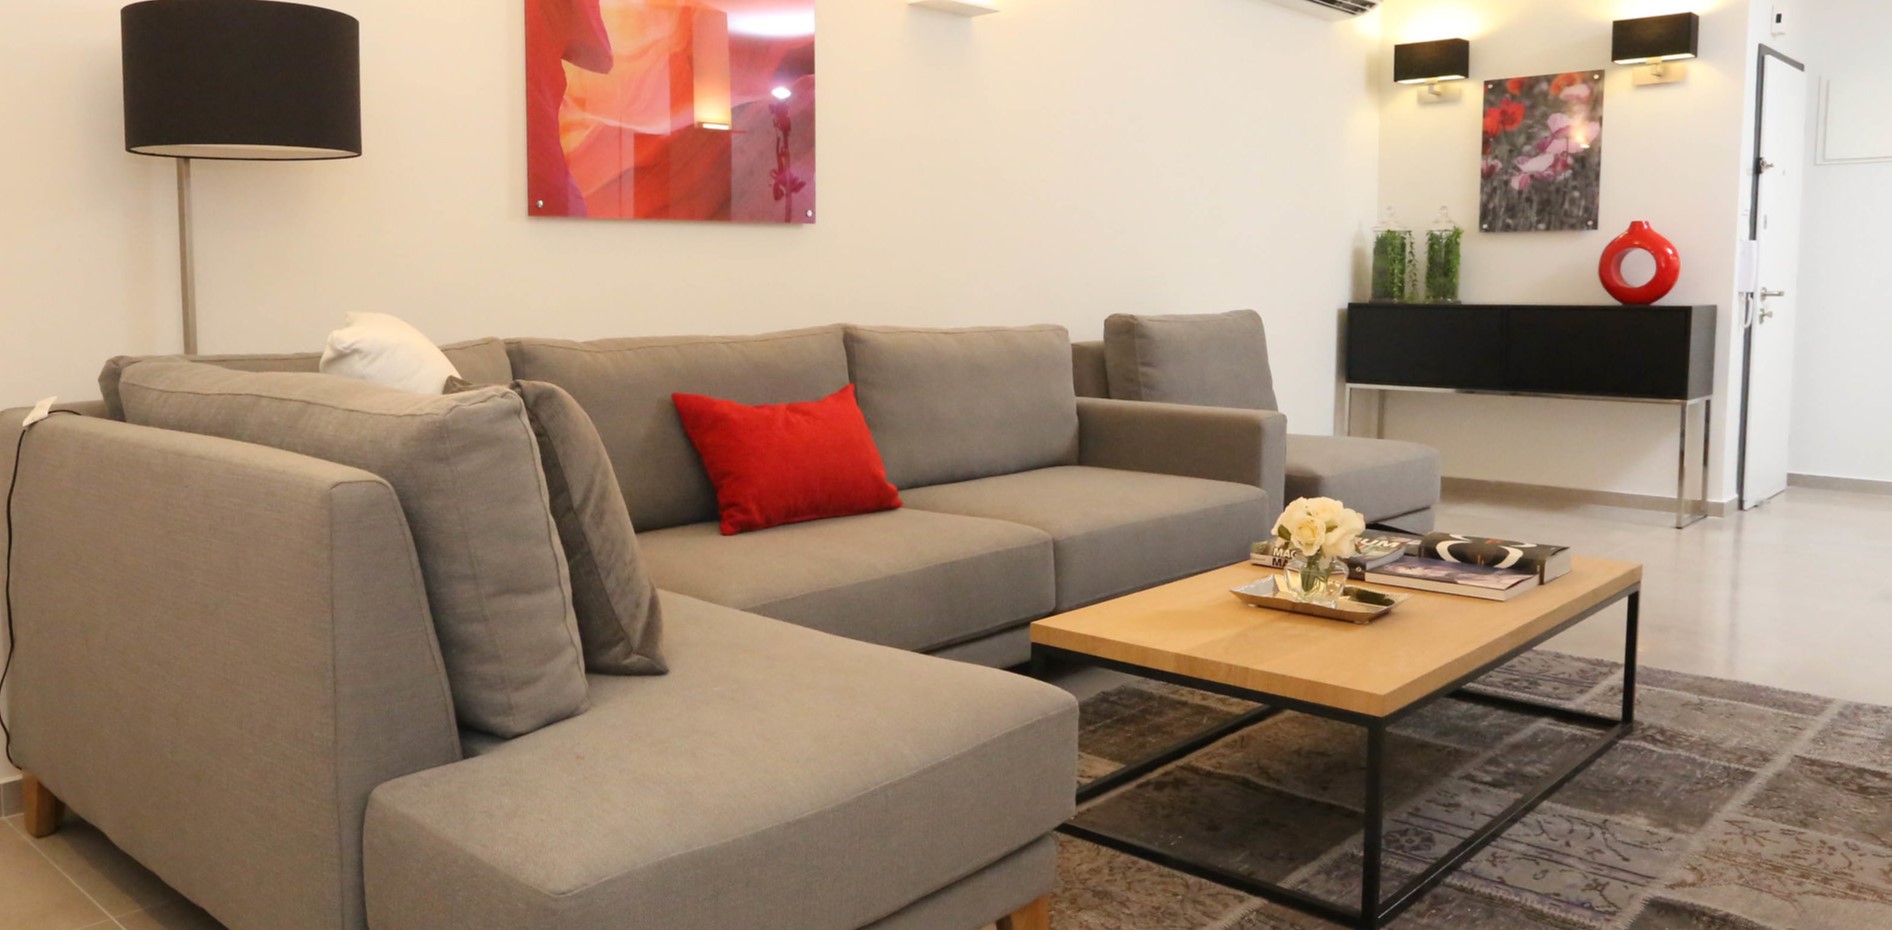 В домашнем кабинете можно сделать удобную зону отдыха из дивана и стильного журнального столика